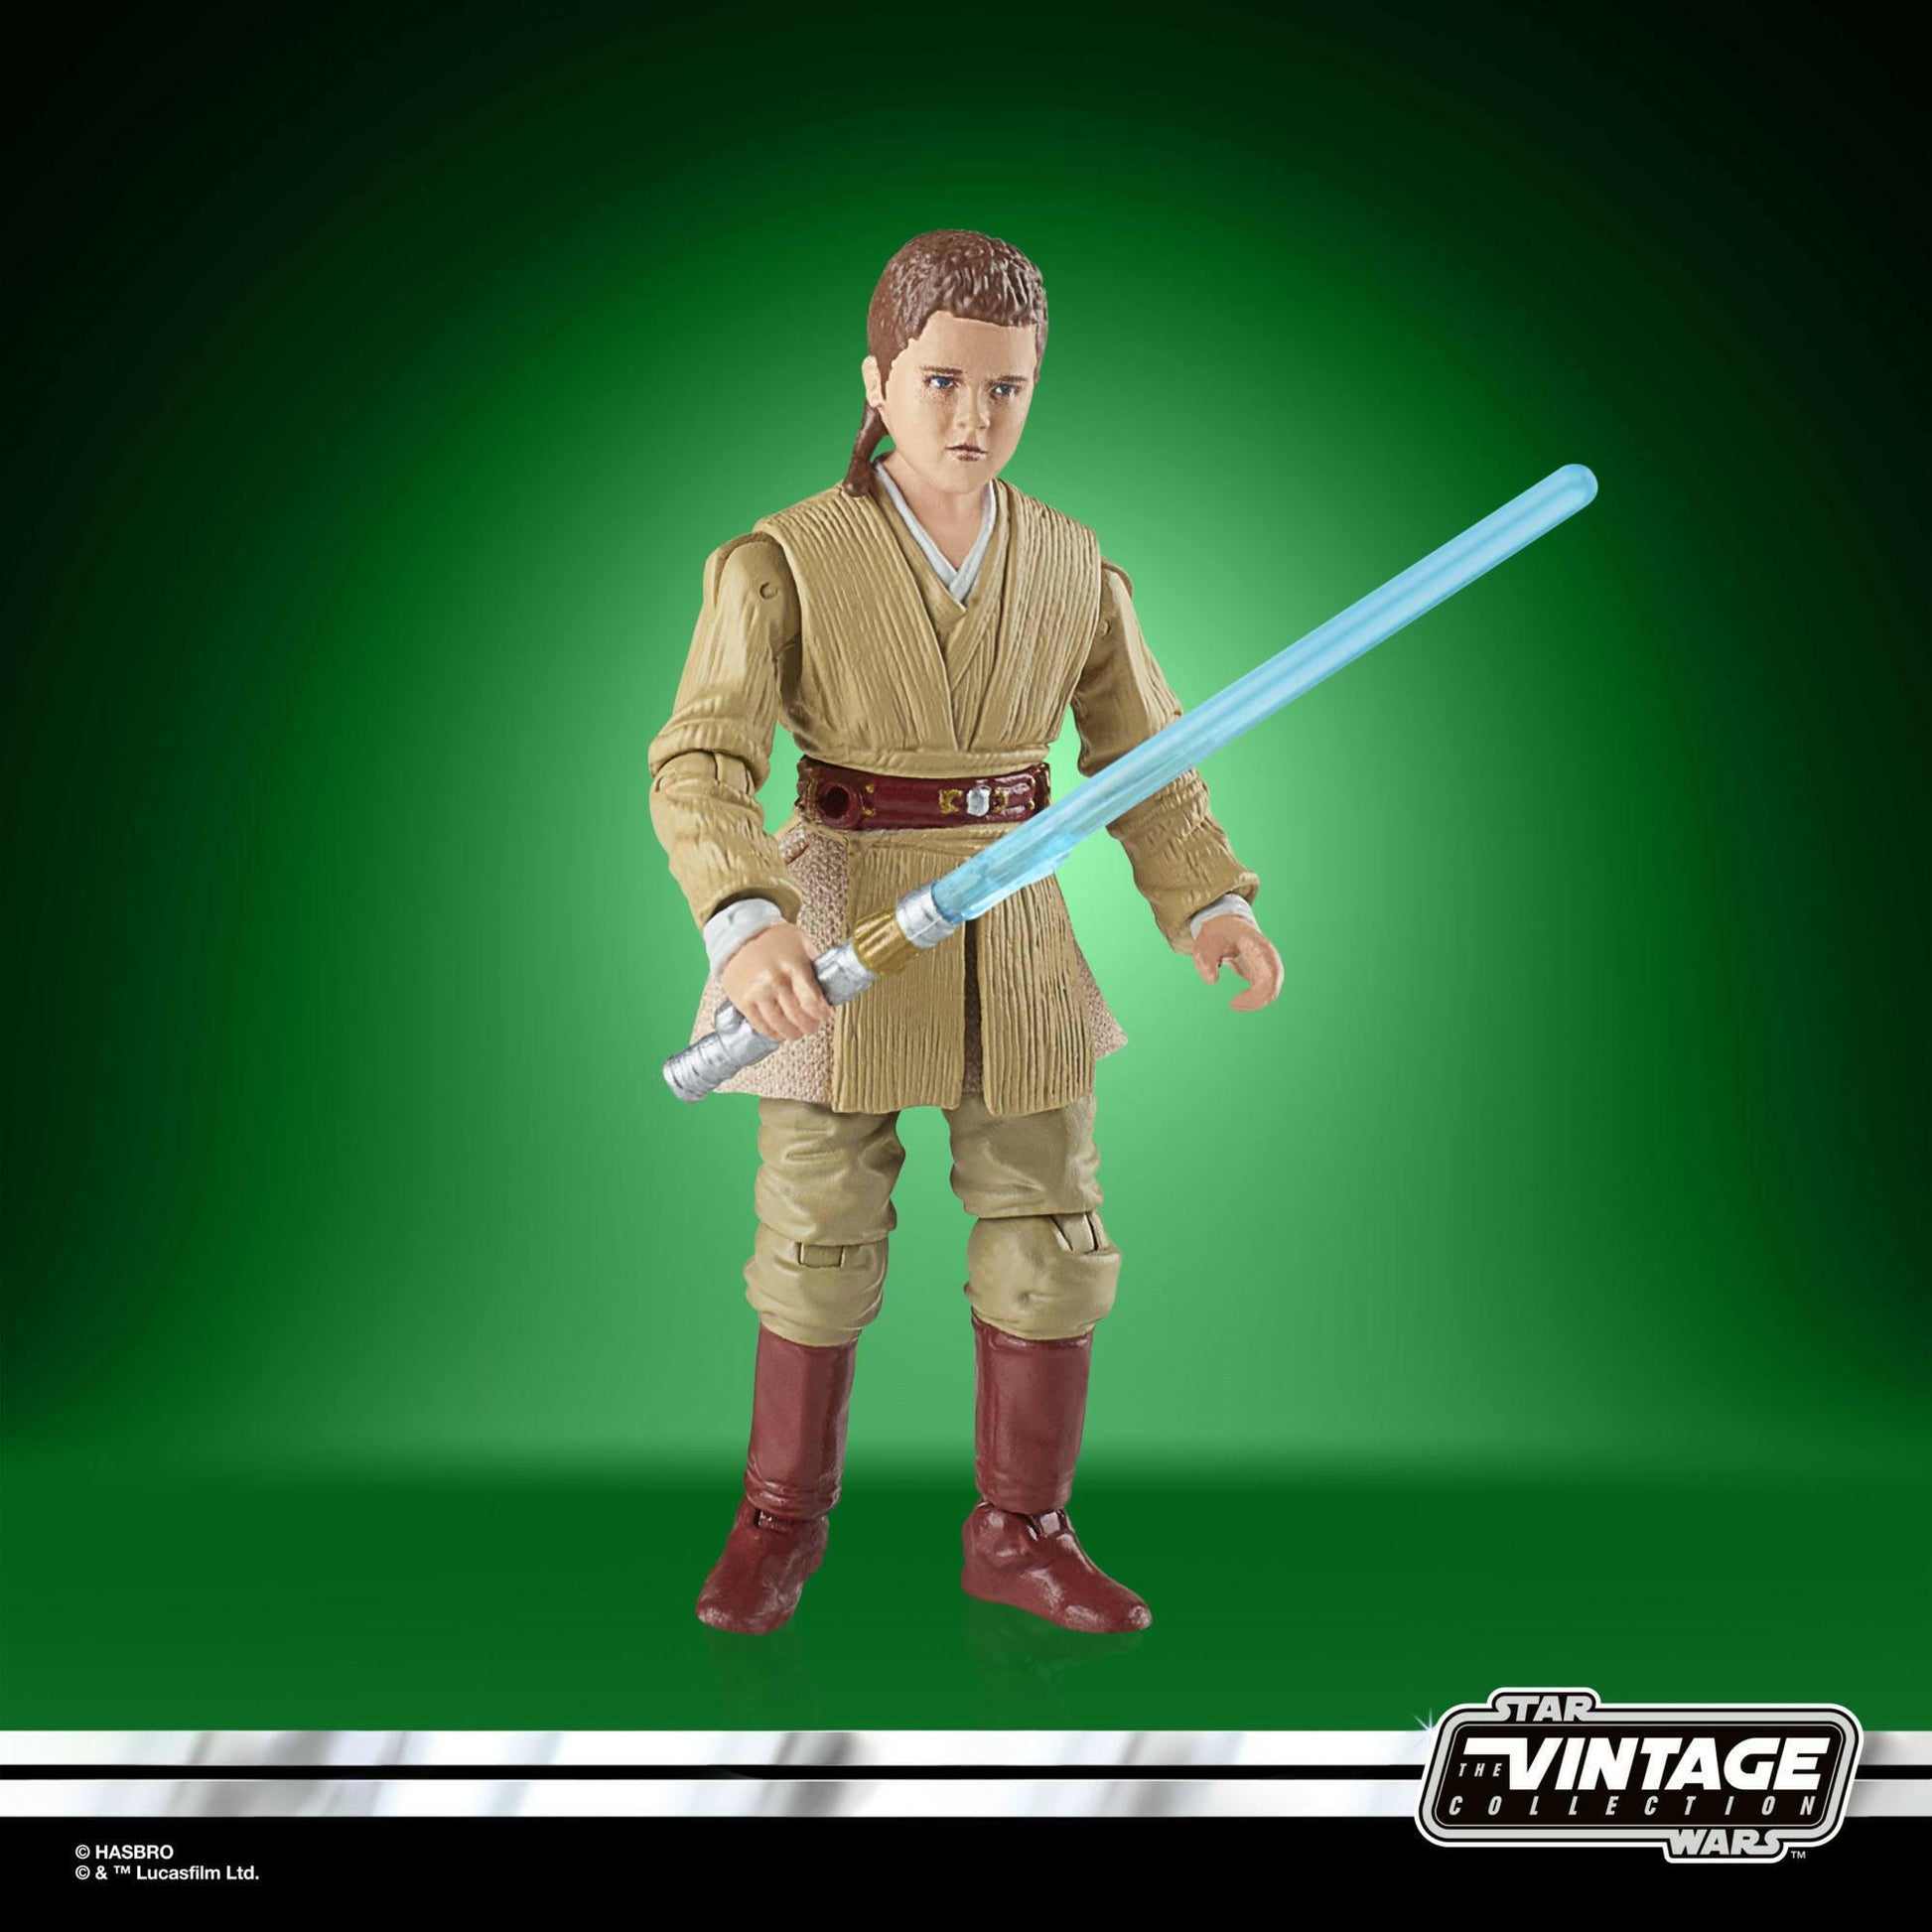 Star Wars Vintage Collection Episode I Actionfigur 2022 Anakin Skywalker 10cm Hasbro